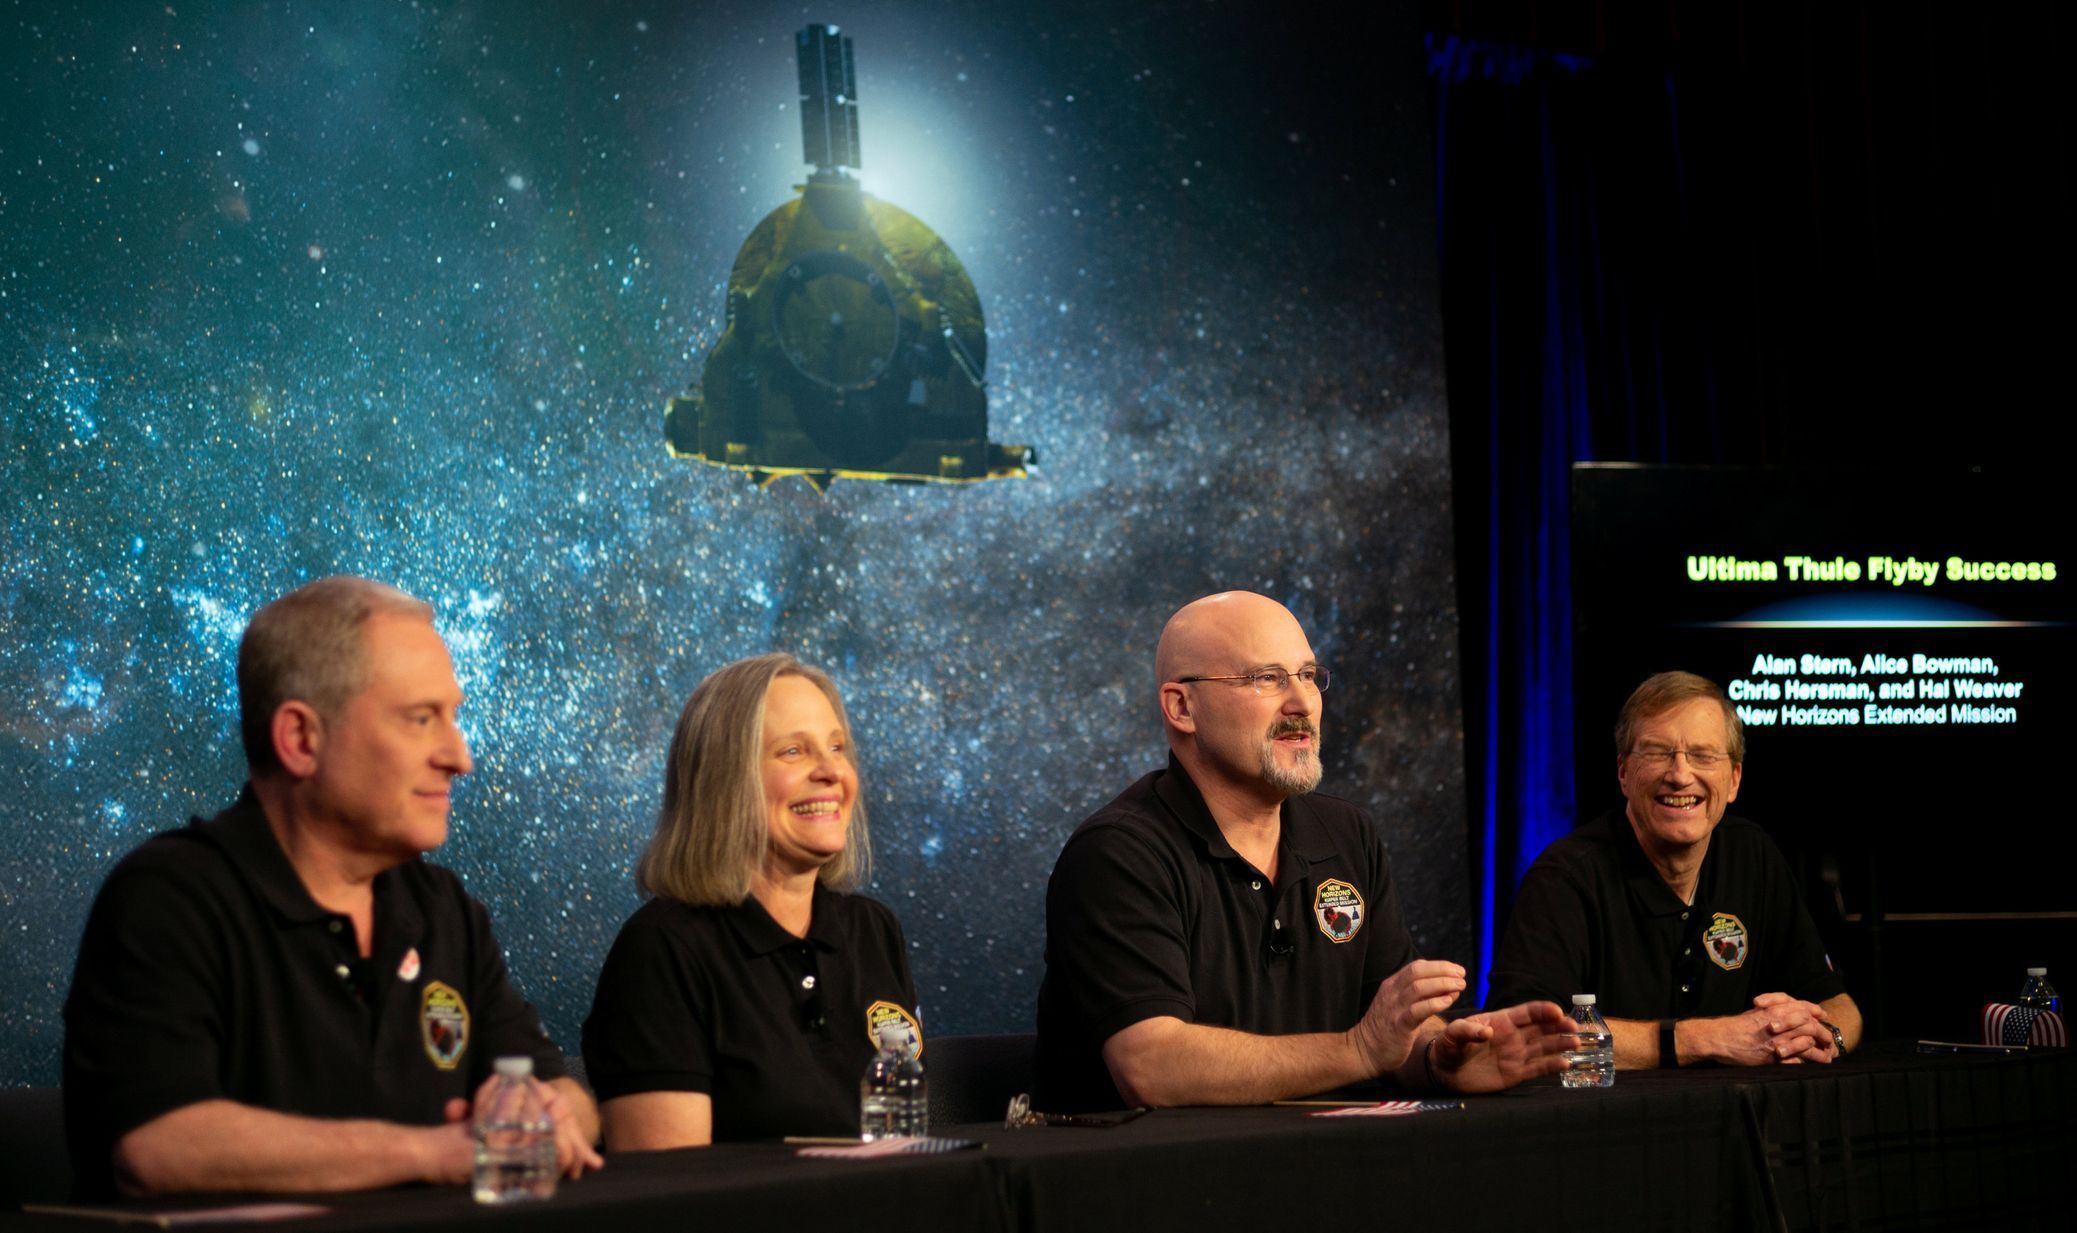 Tisková konference poté, co vědci dostali informaci, že New Horizons proletěla kolem planetky Ultima Thule.